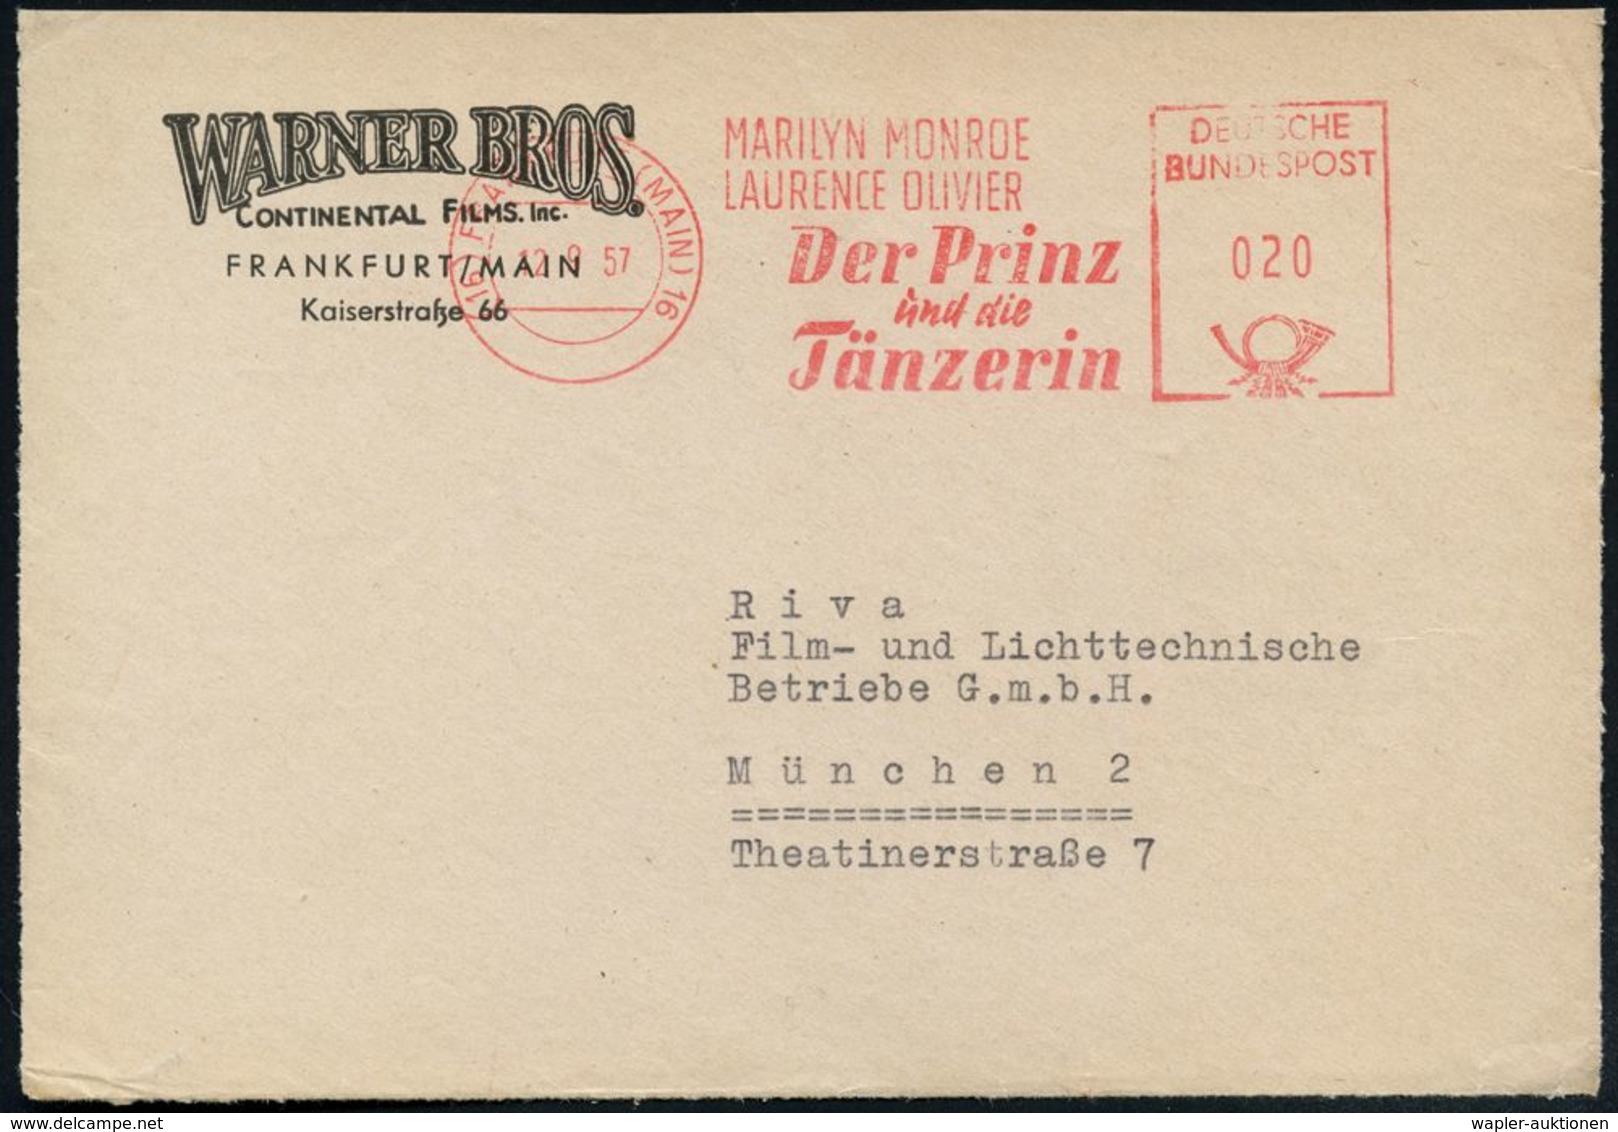 (16) FRANKFURT (MAIN) 16/ MARILYN MONROE/ LAURENCE OLIVIER/ Der Prinz/ Und Die/ Tänzerin 1957 (12.9.) Seltener AFS, Regi - Cinéma